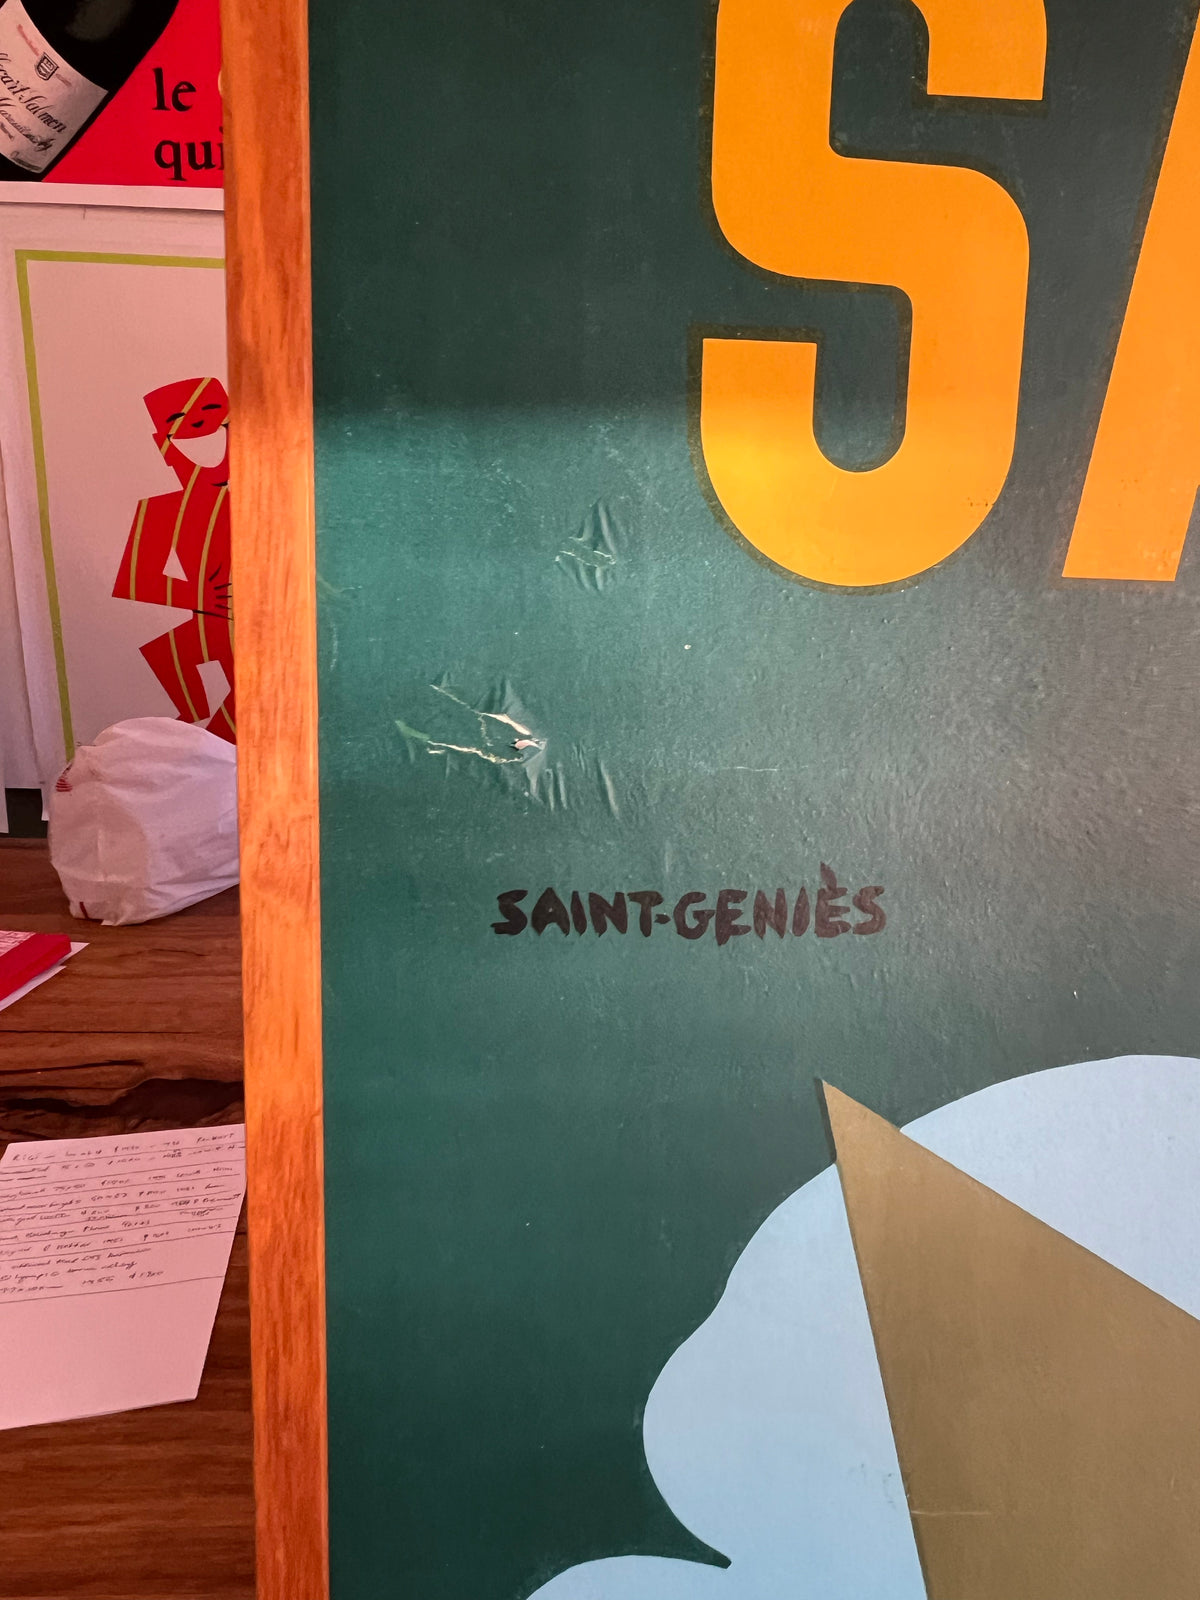 Santogene Air Freshener by Saint-Geniès